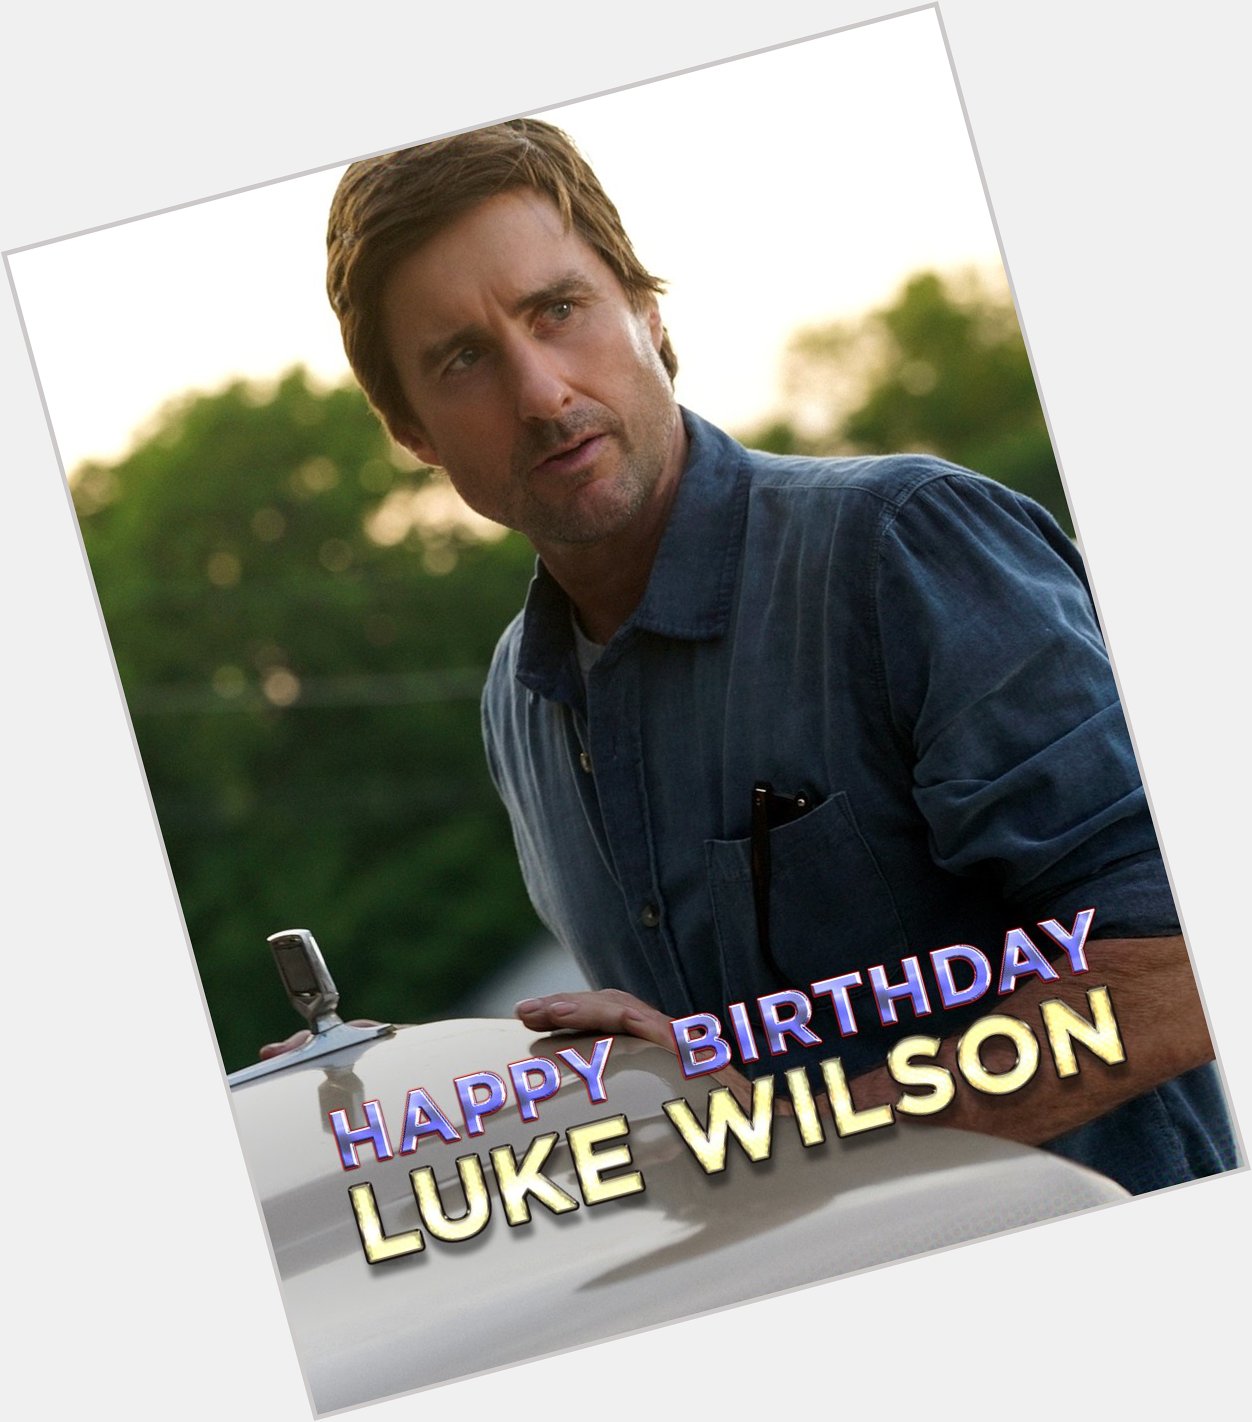 Every hero needs a sidekick. Happy Birthday, Luke Wilson! 